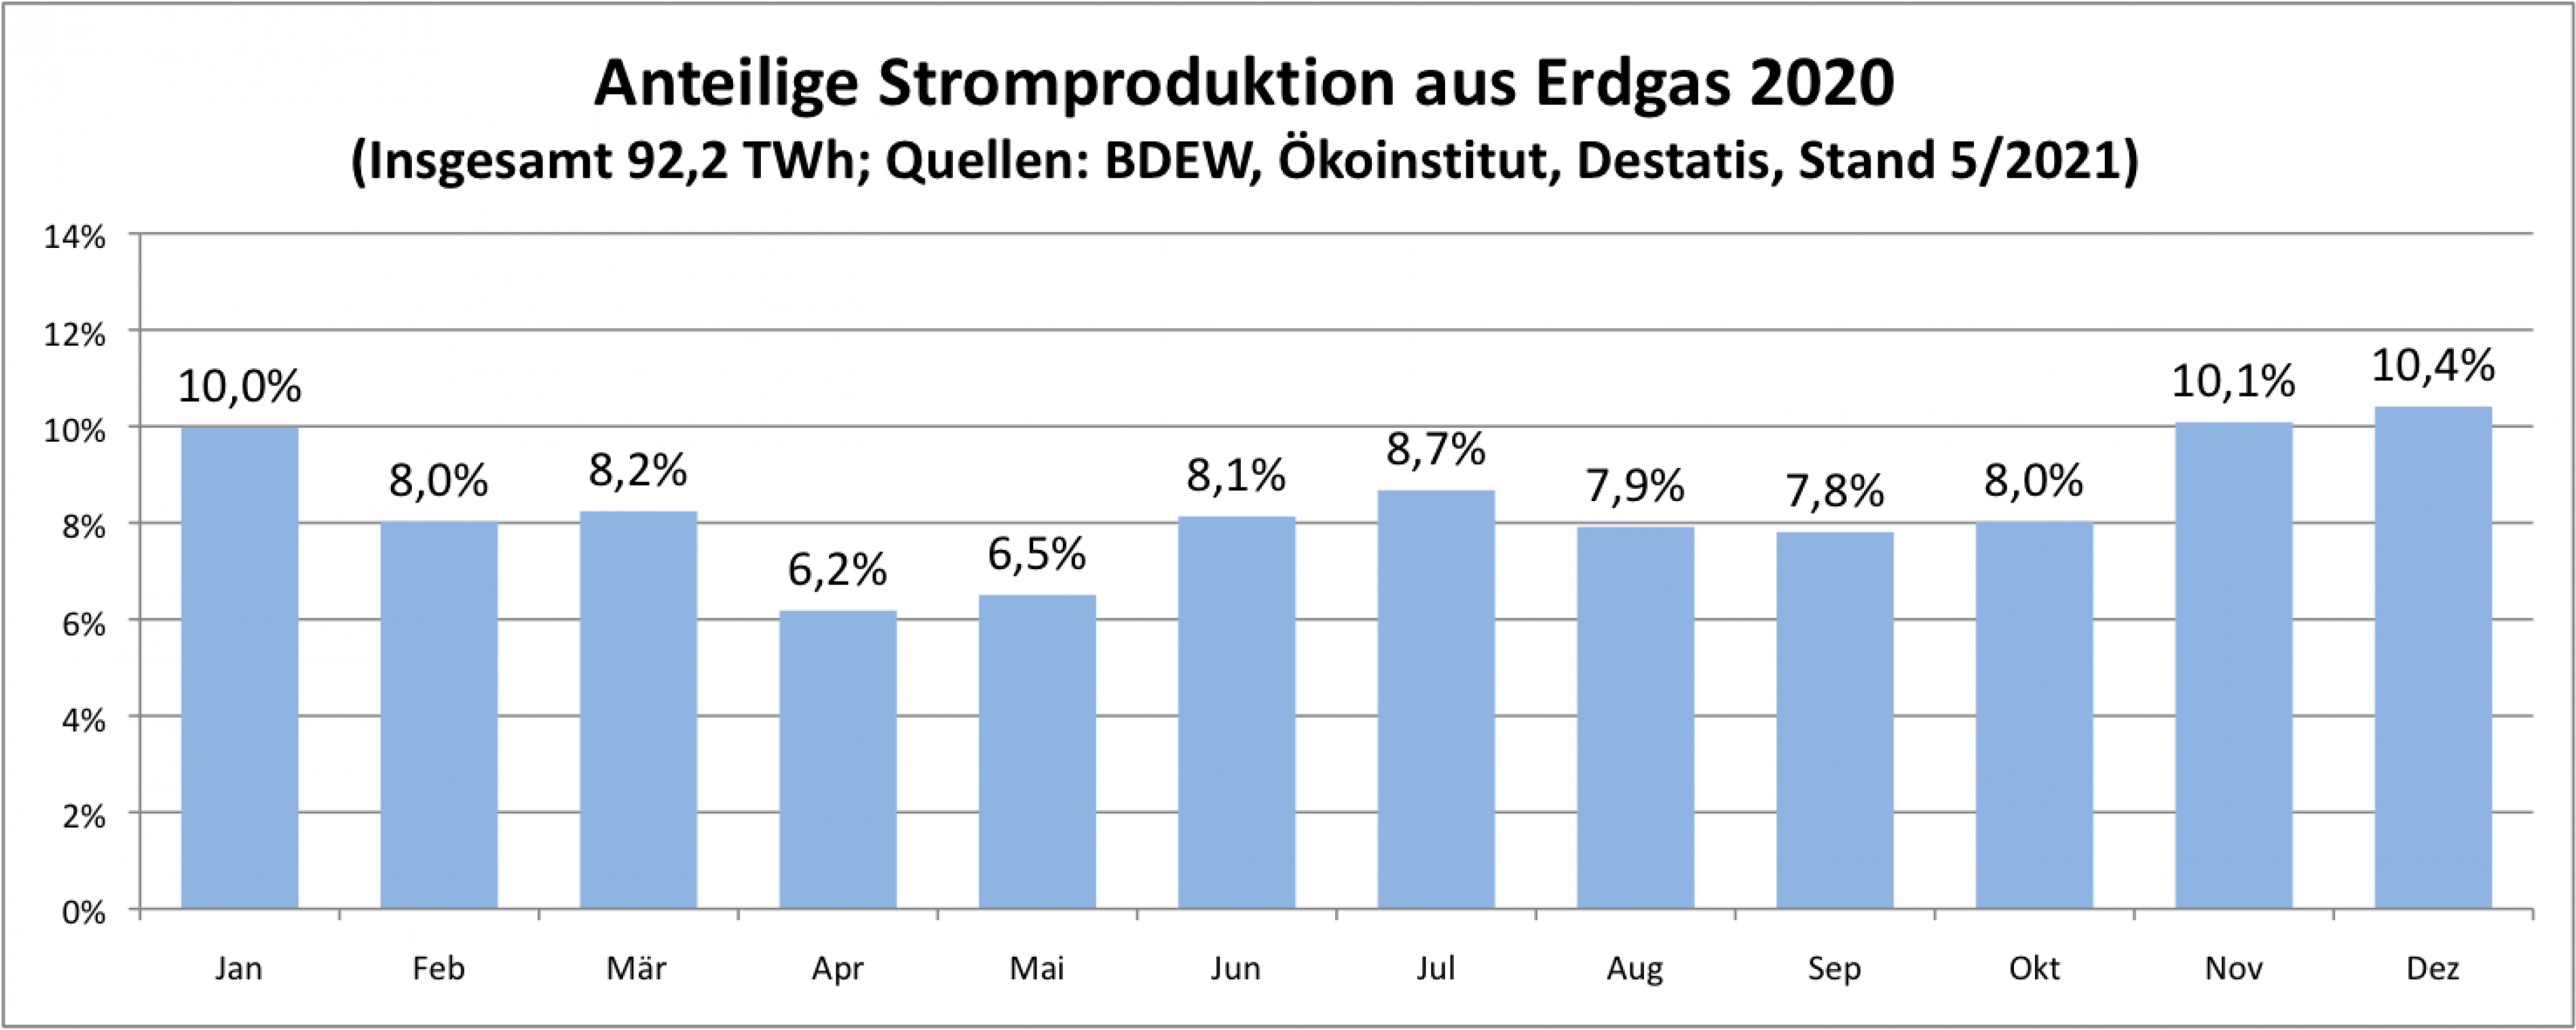 Die Grafik ist ein Säulendiagramm. Sie zeigt den monatlichen Anteil der Stromproduktion aus Erdgas (insgesamt 92 Terawattstunden) im Jahr 2020. Die Säulen weisen einen leichten Dipp im April und Mai, sowie zwischen August und Oktober aus. Der höchste Wert wird im Dezember erreicht (10,4%), der niedrigste im April (6,2%). Die Zahlen stammen von BDEW, Ökoinstitut und Destatis.